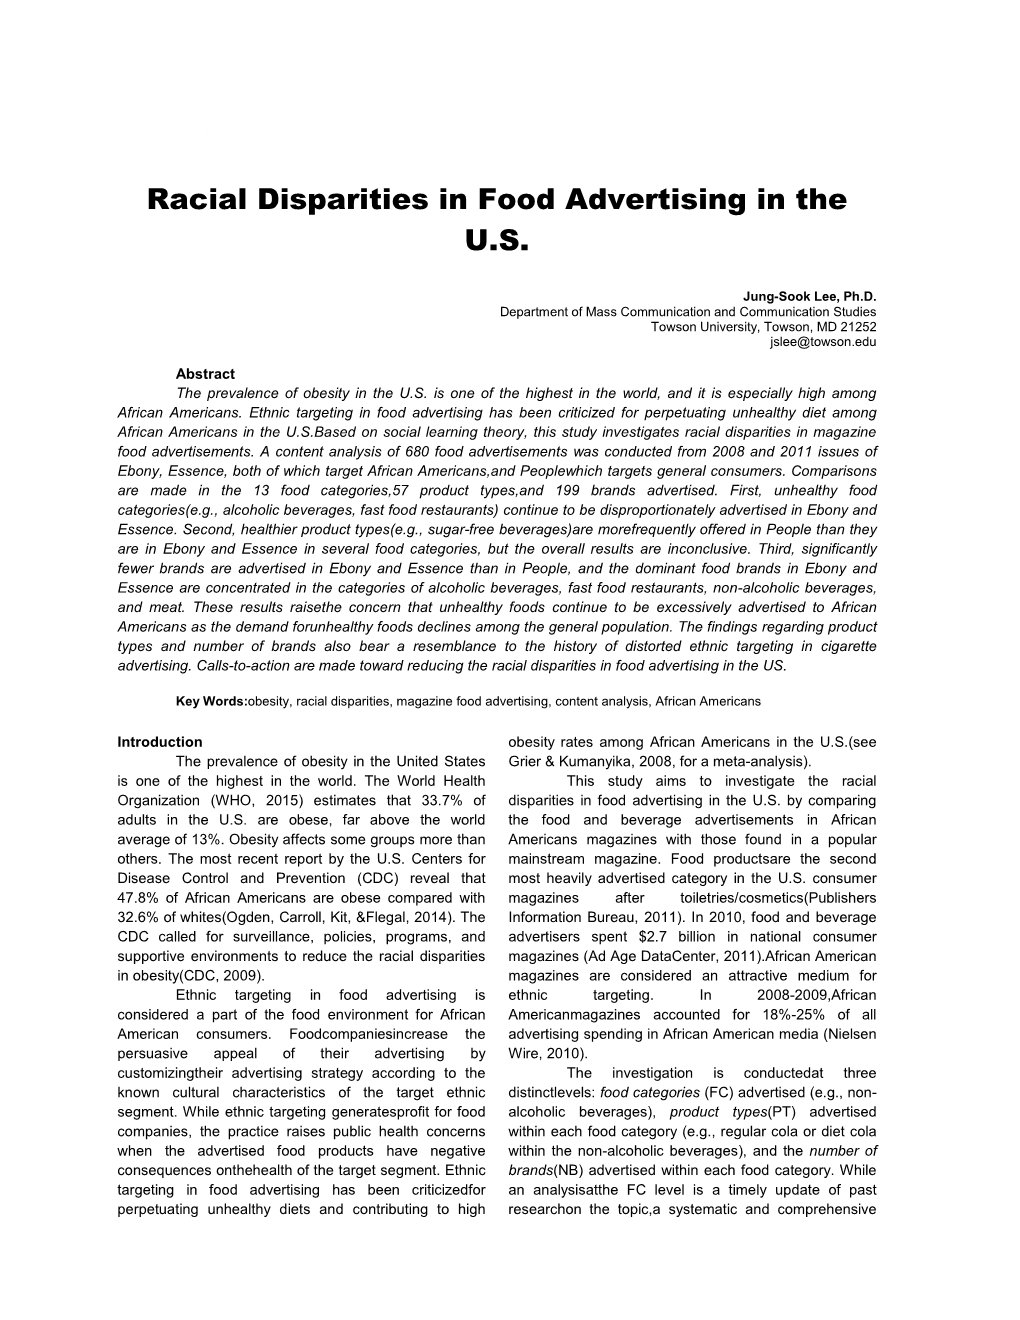 Racial Disparities in Food Advertising in the U.S